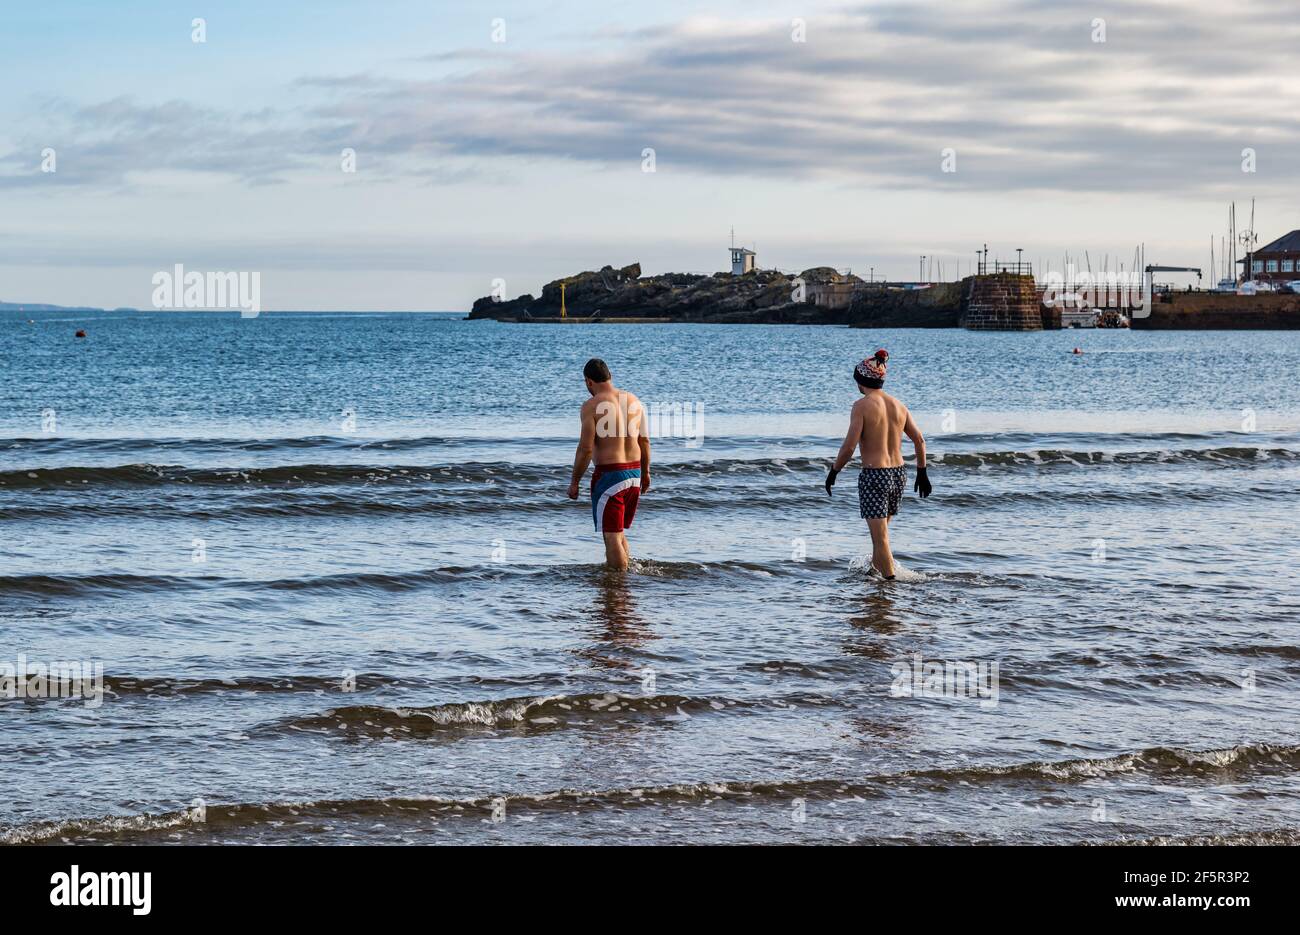 Dos nadadores de aguas salvajes o abiertas con troncos de natación entran en el mar Firth of Forth en West Bay, North Berwick, East Lothian, Scotland, UK Foto de stock